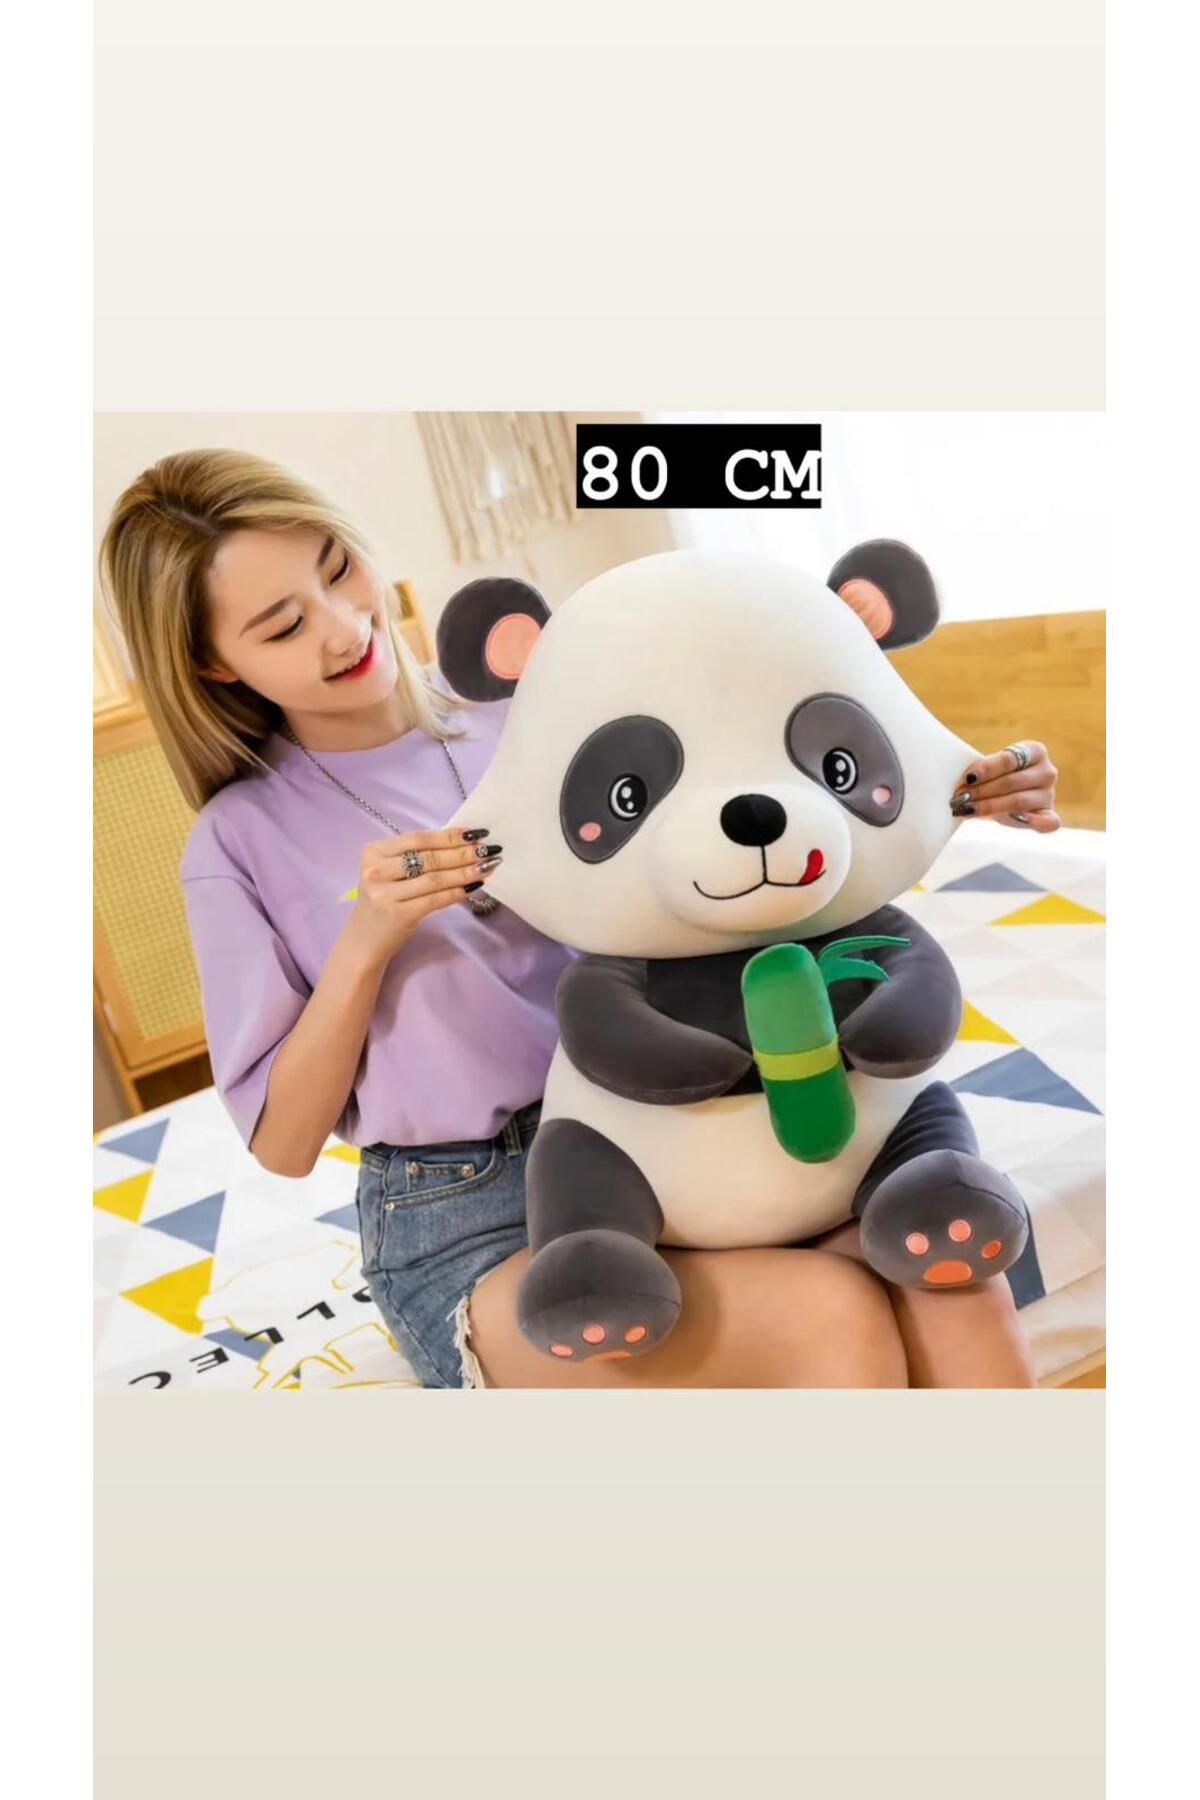 MEM STORE Panda Peluş Oyuncak Ayıcık Uyku Ve Oyun Arkadaşım 80 Cm